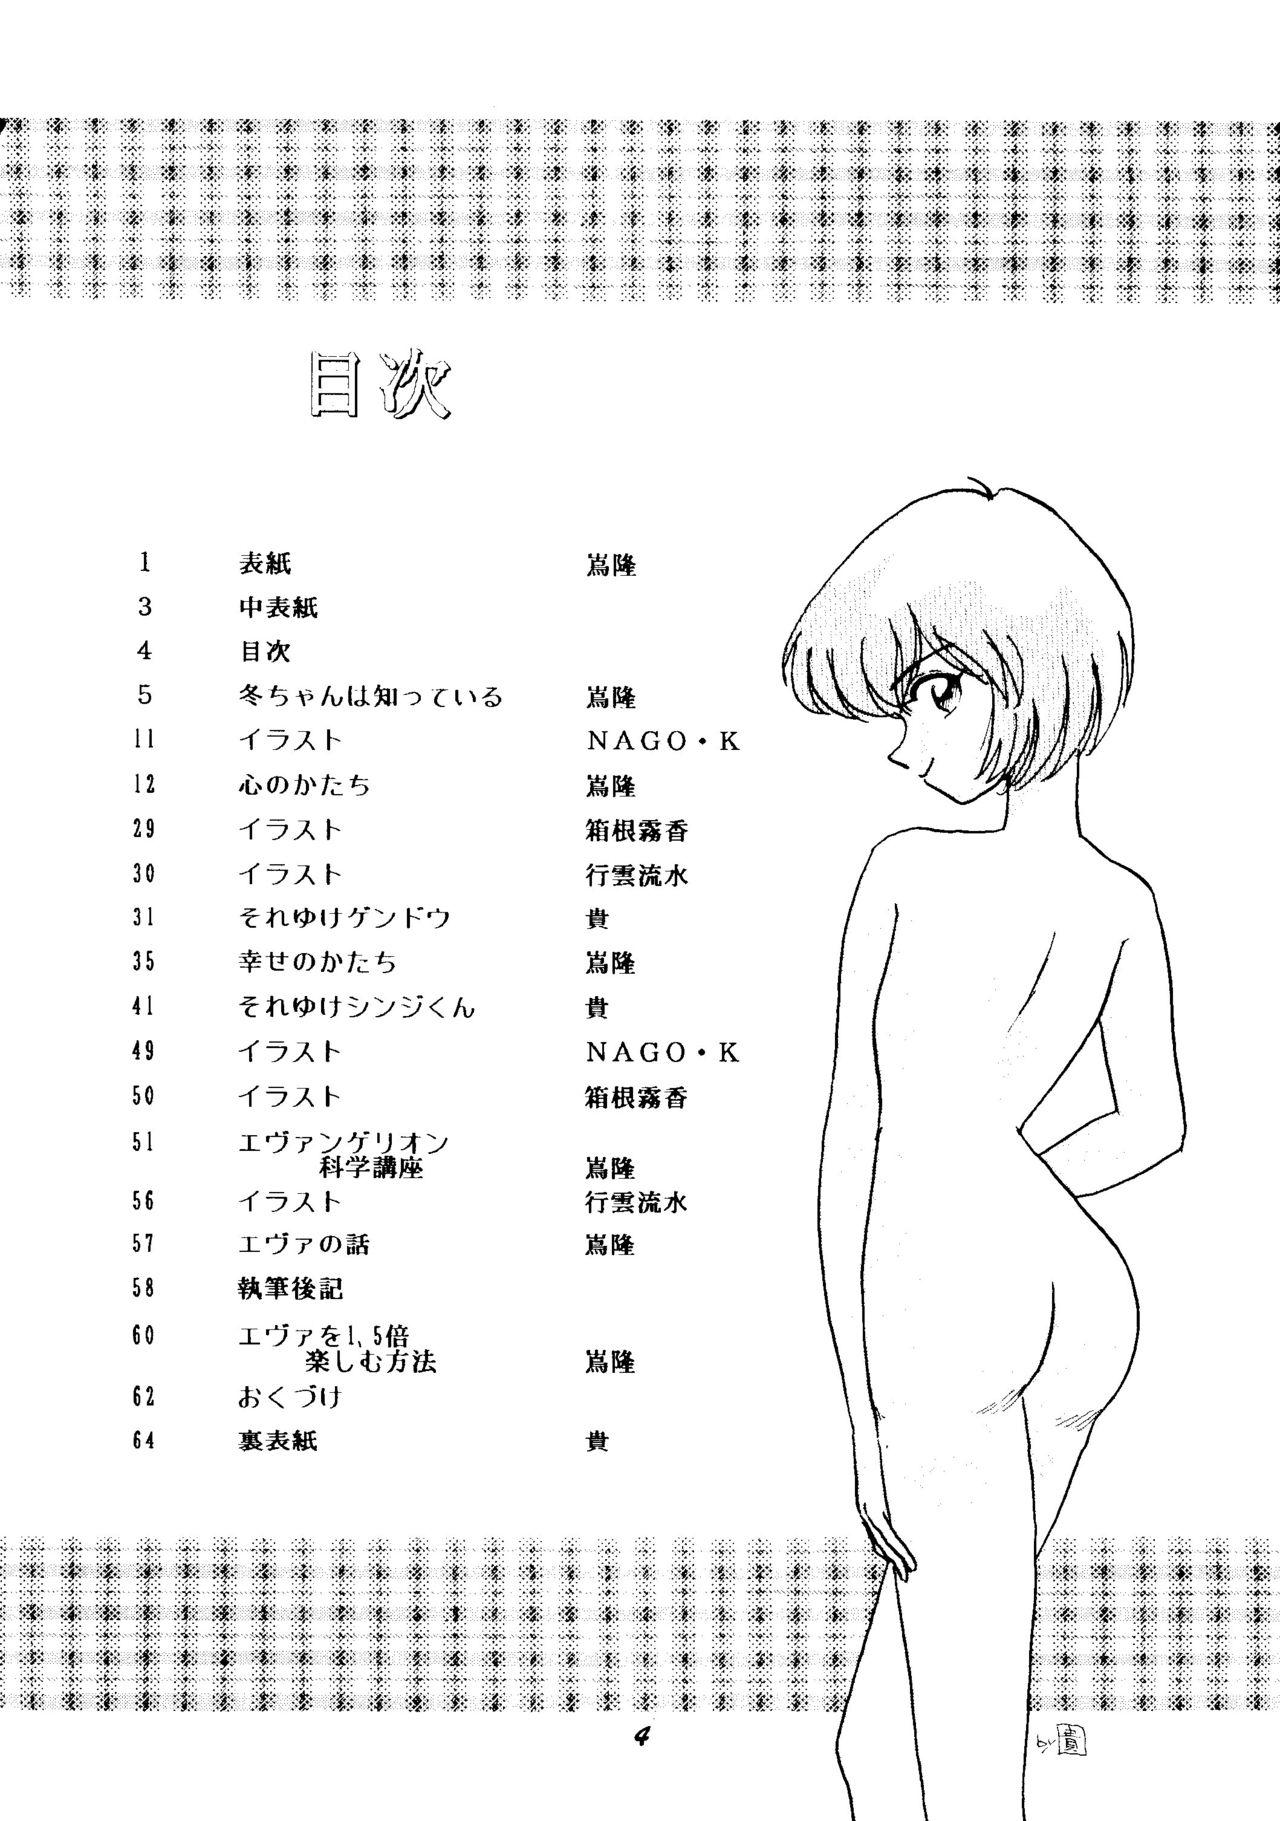 Bigdick (C50) [Studio Boxer (Shima Takashi, Taka) HoHeTo 13 (Neon Genesis Evangelion) - Neon genesis evangelion Nurumassage - Page 3